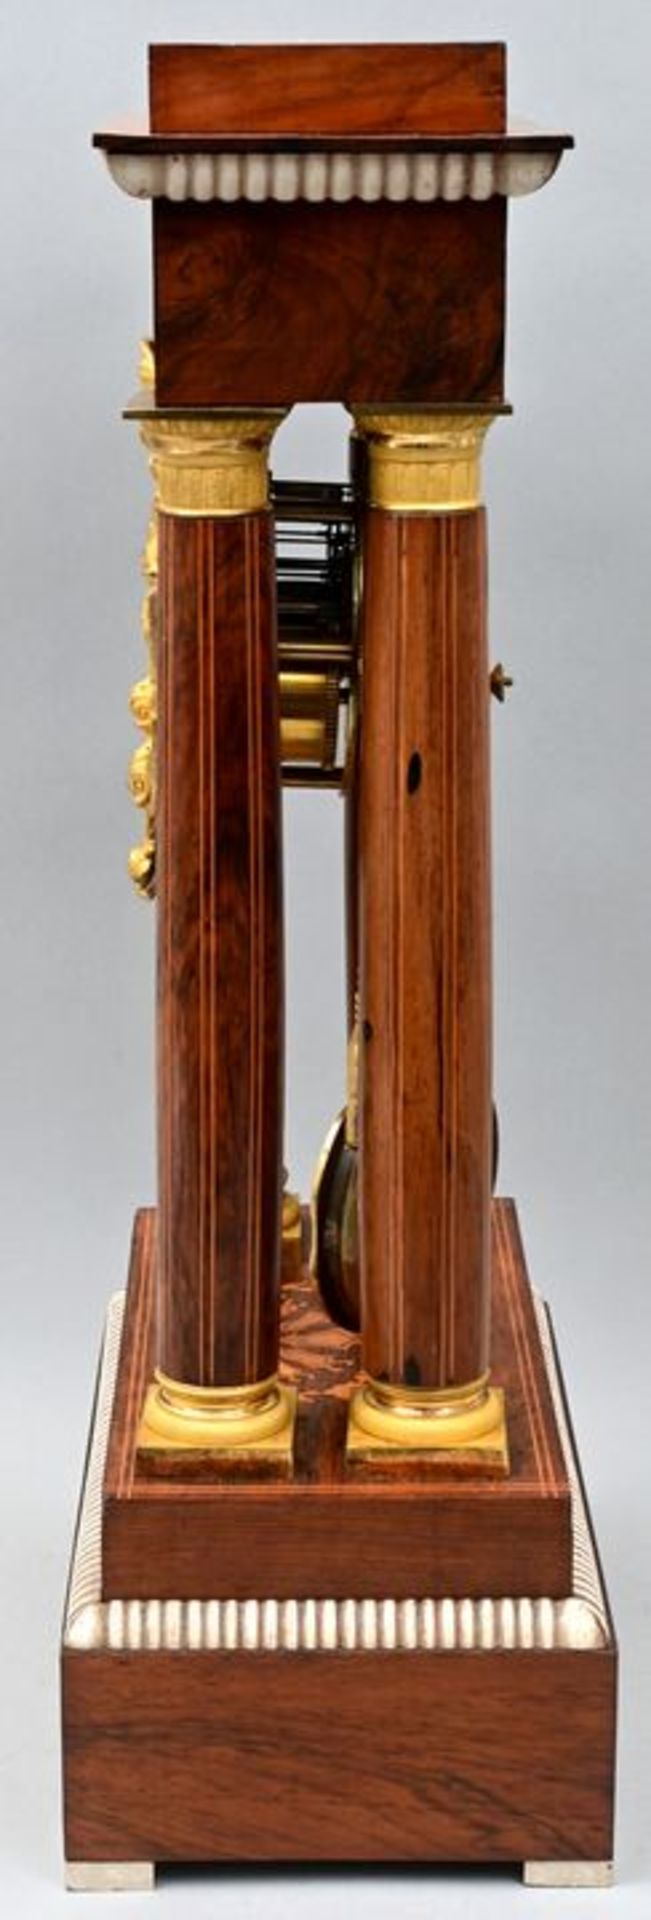 Stutzuhr / Bracket clock - Image 2 of 7